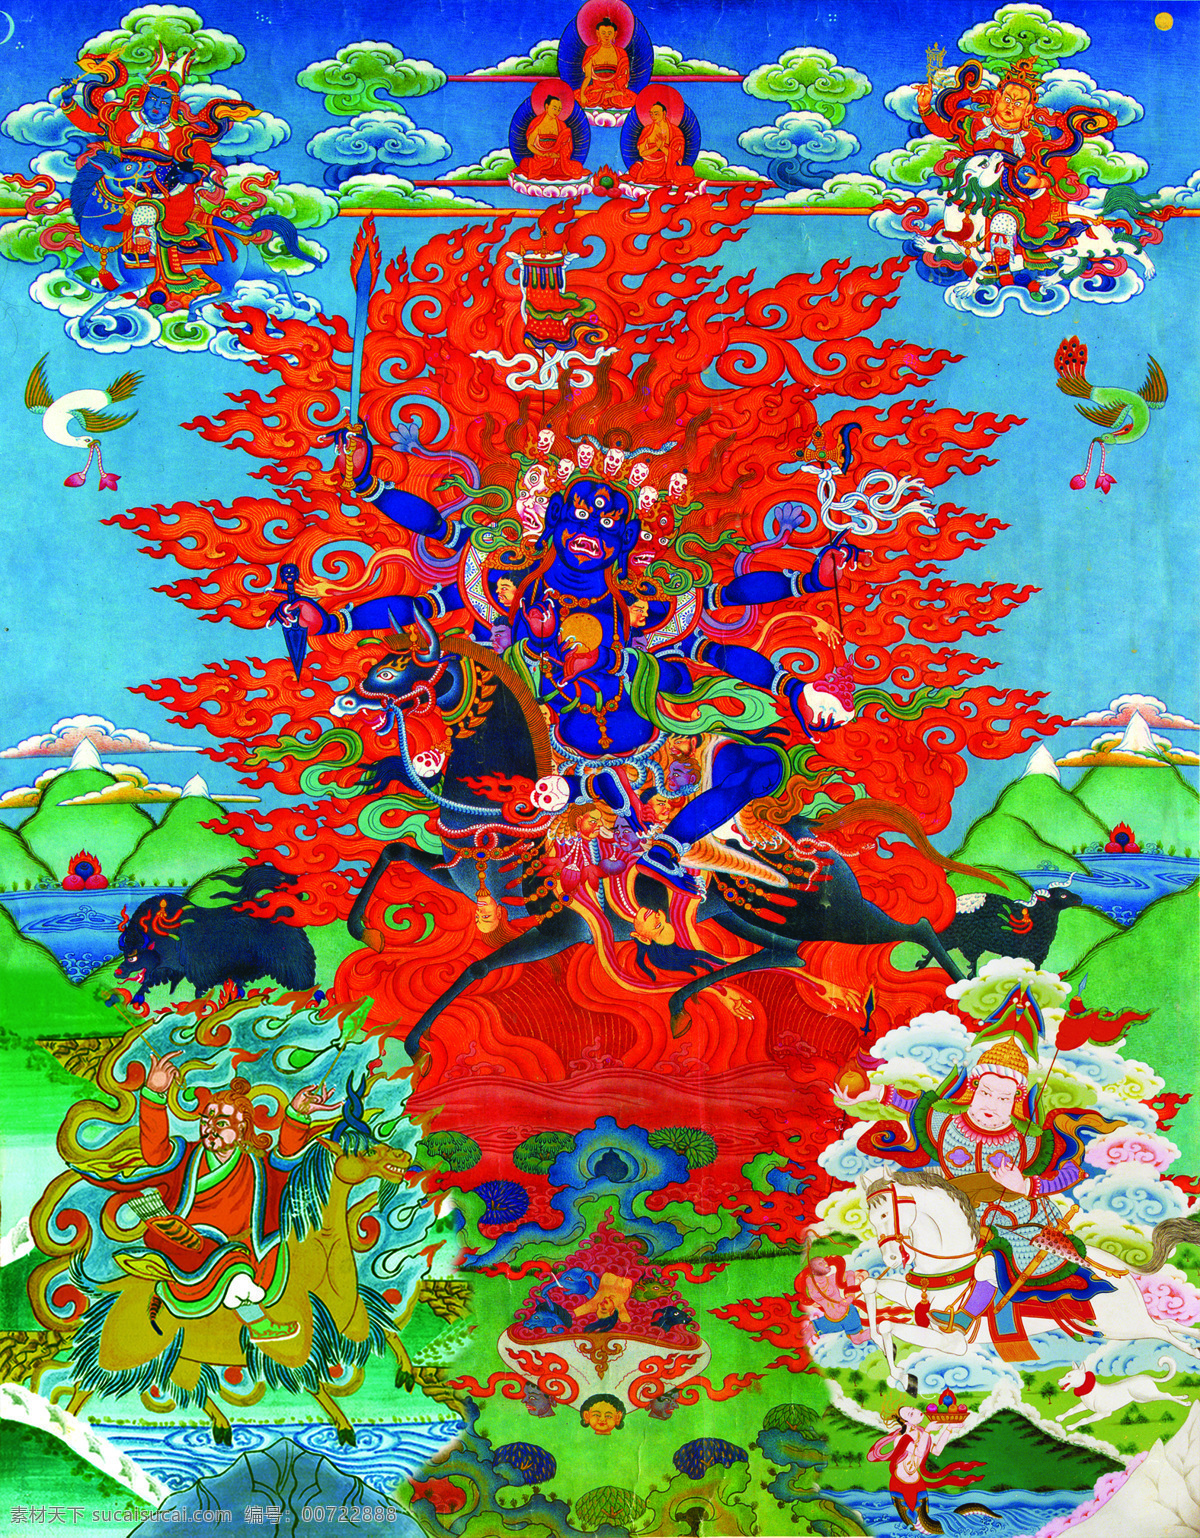 唐卡 佛教 藏传佛教 佛 宗教 宗教信仰 菩萨 西藏 民族 工艺 花纹 绘画 艺术 绘画书法 文化艺术